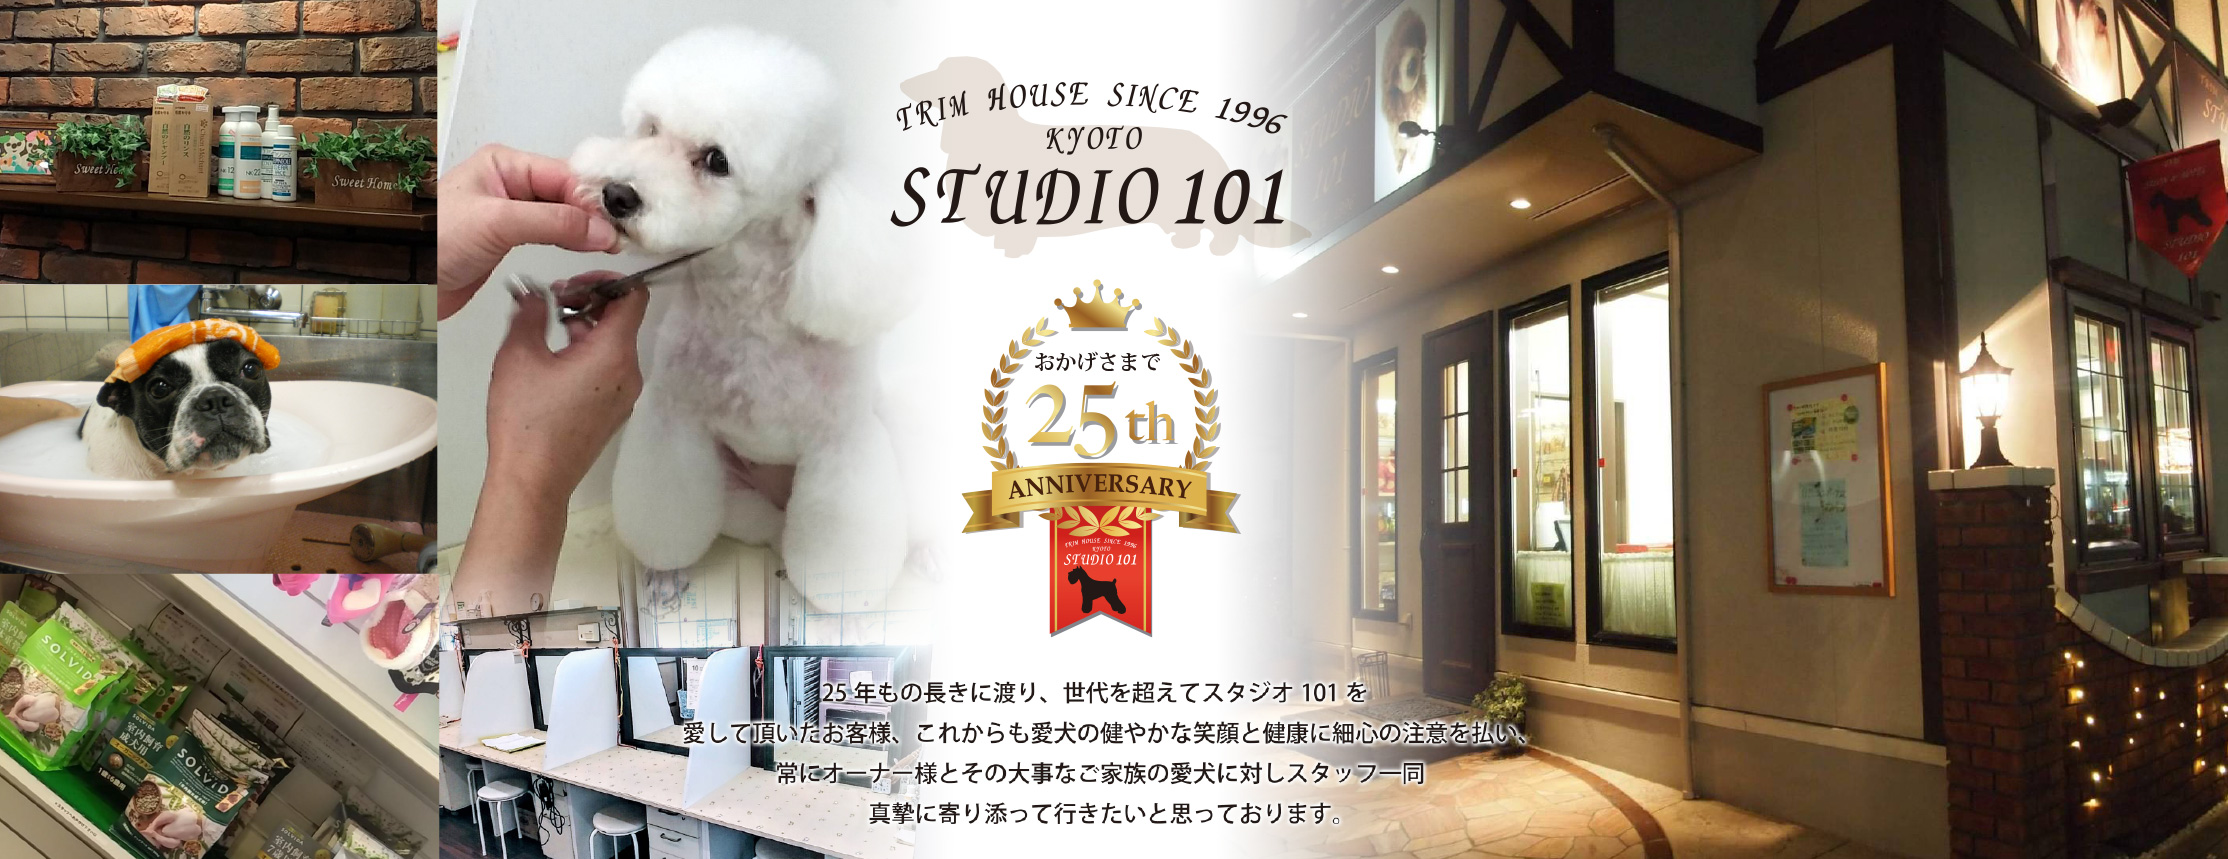 スタジオ101